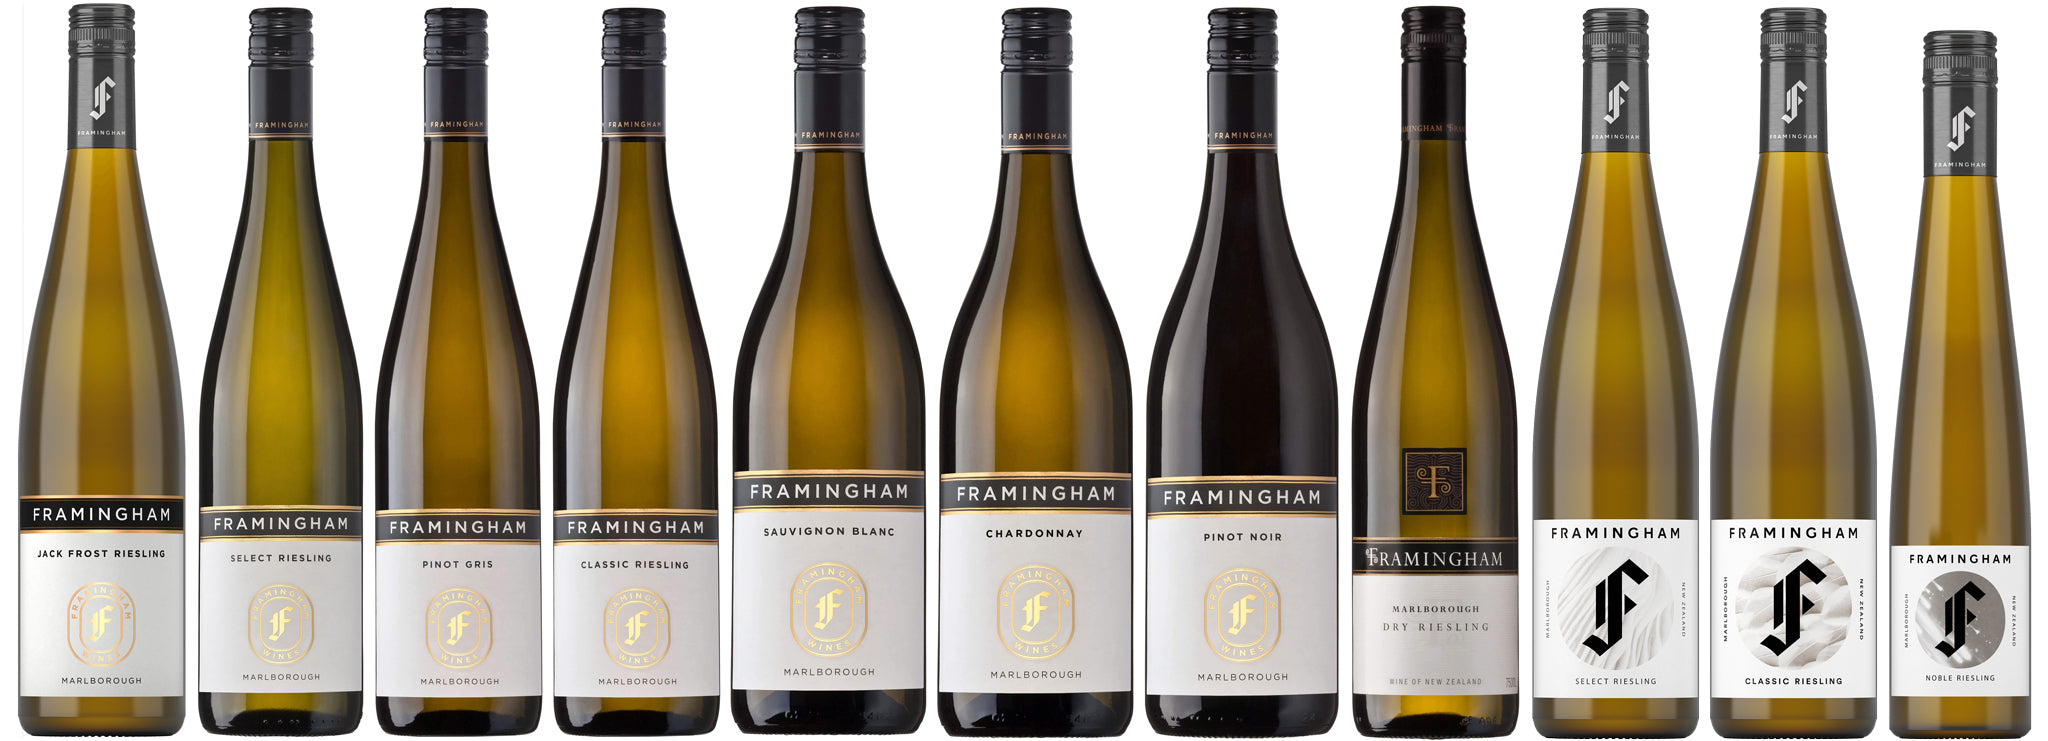 The Framingham wine range